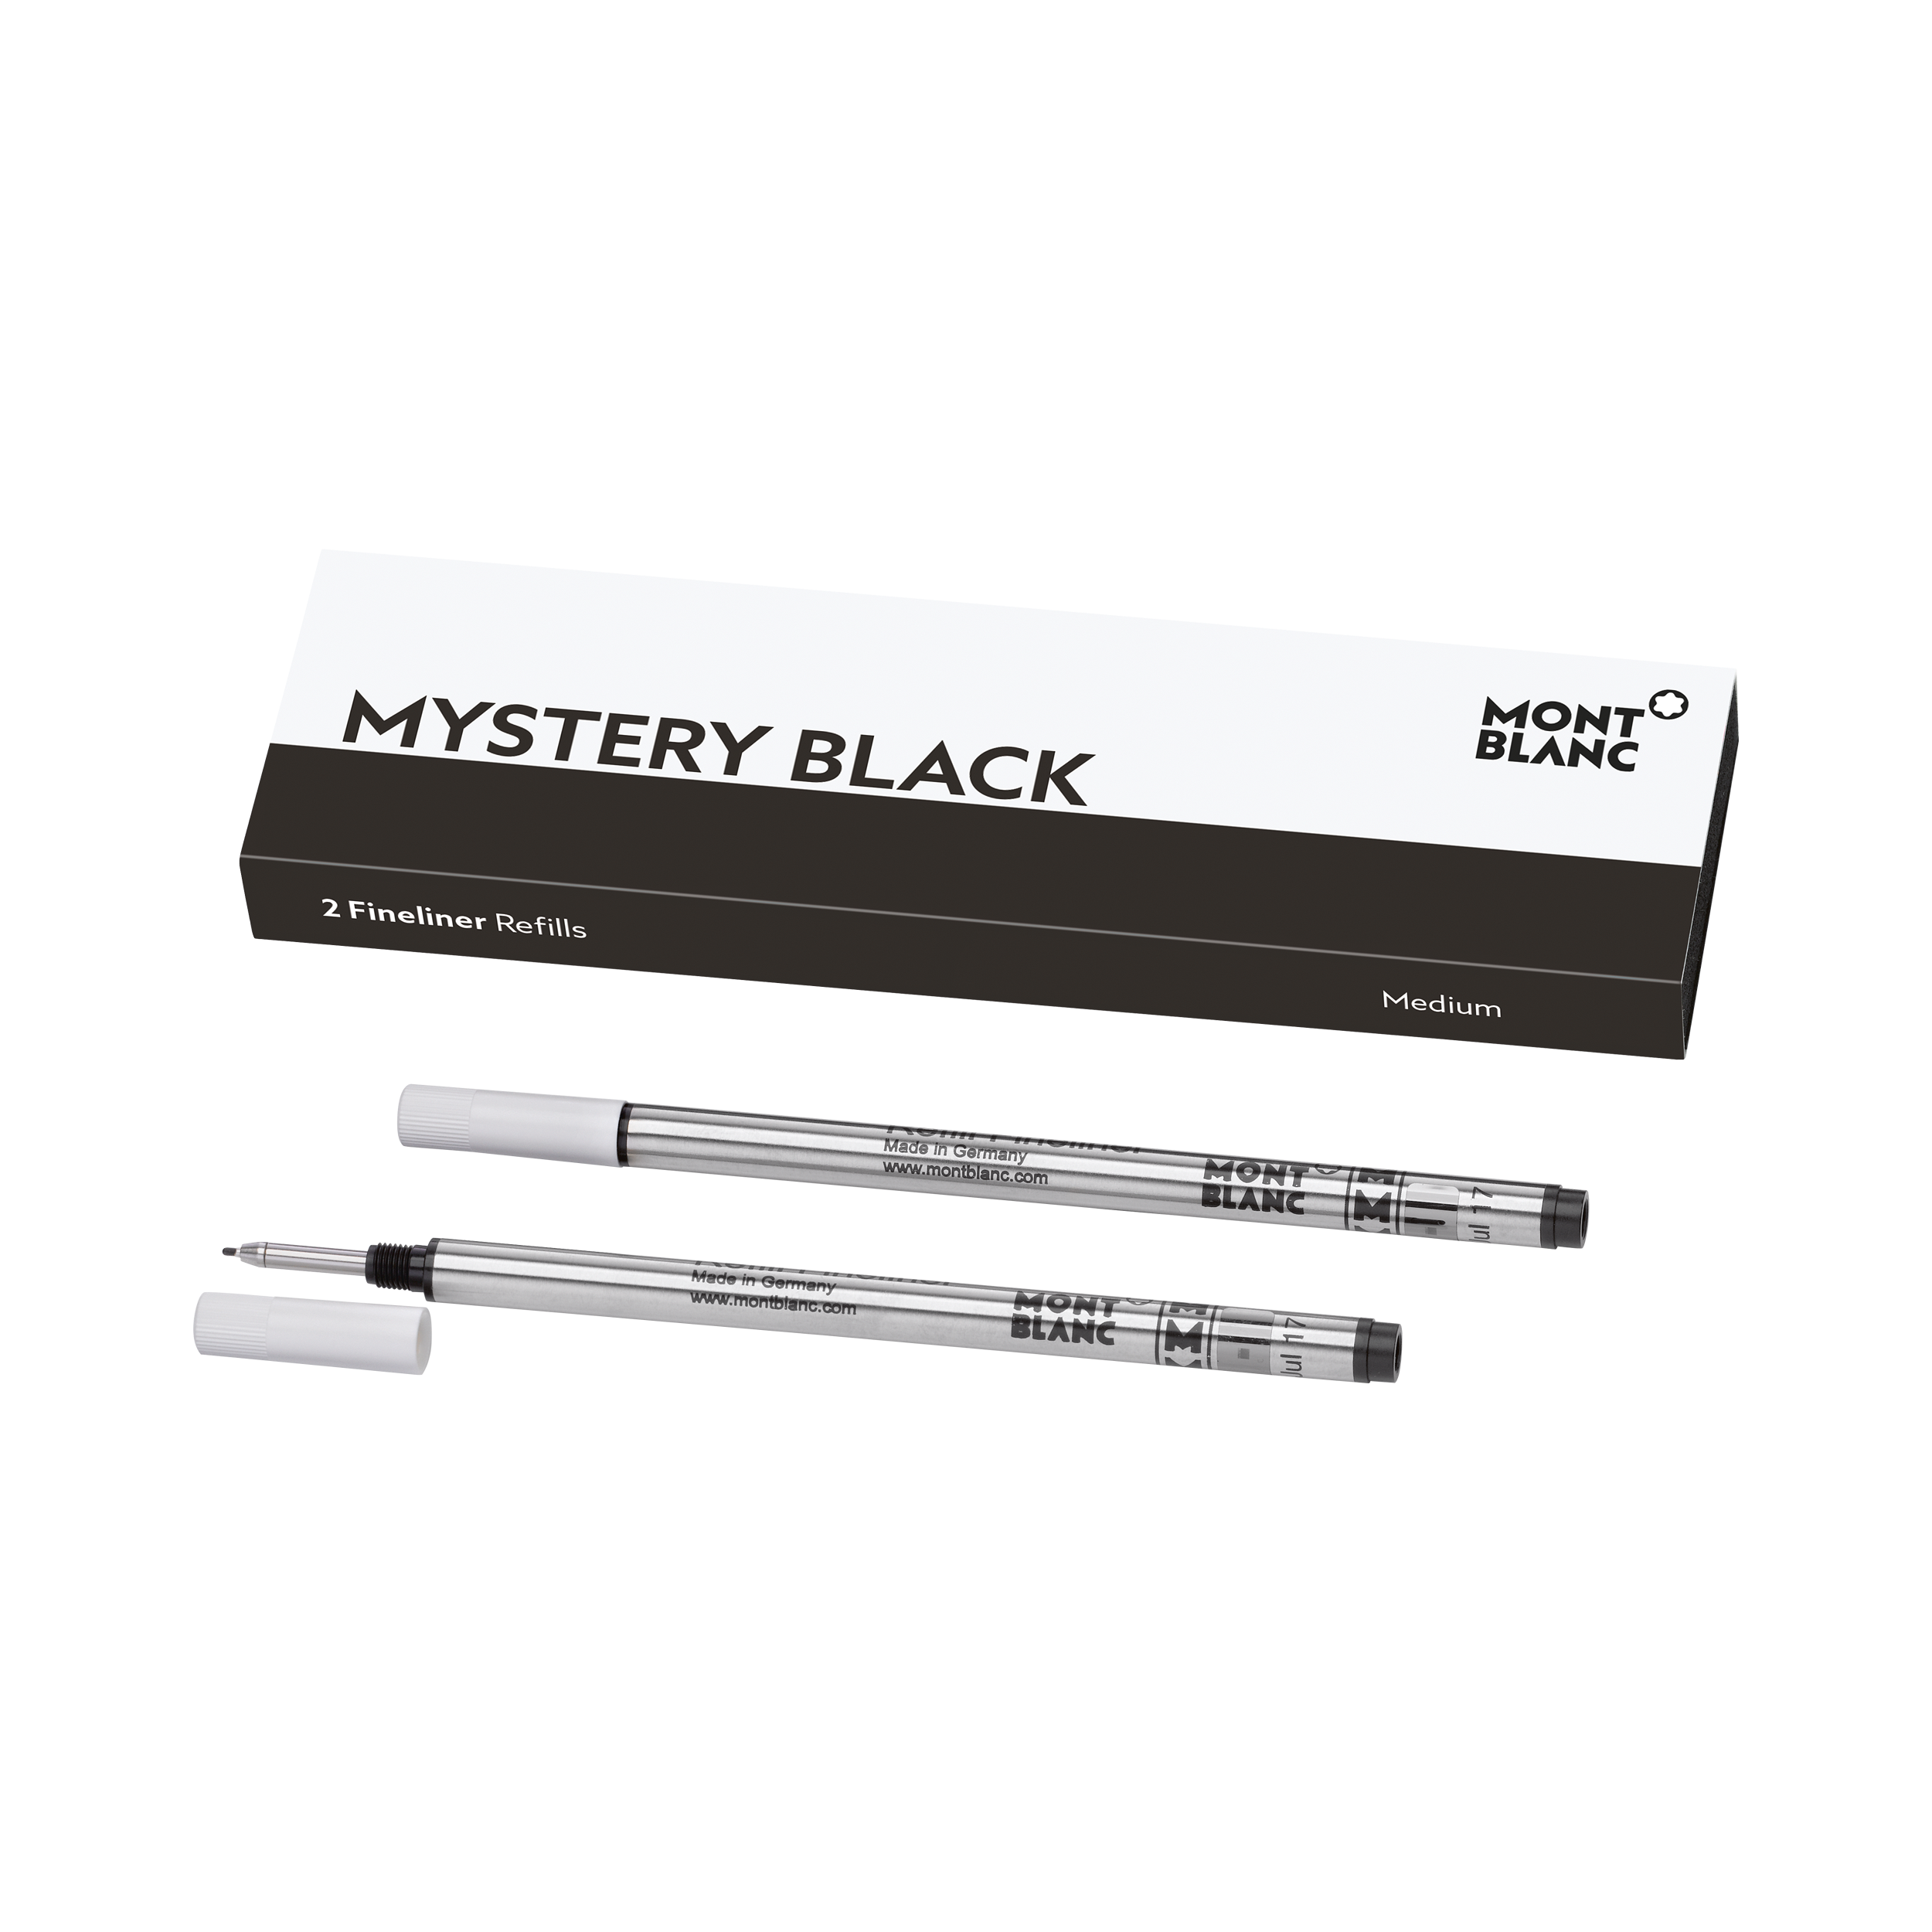 2 Fineliner Refills Medium, Mystery Black